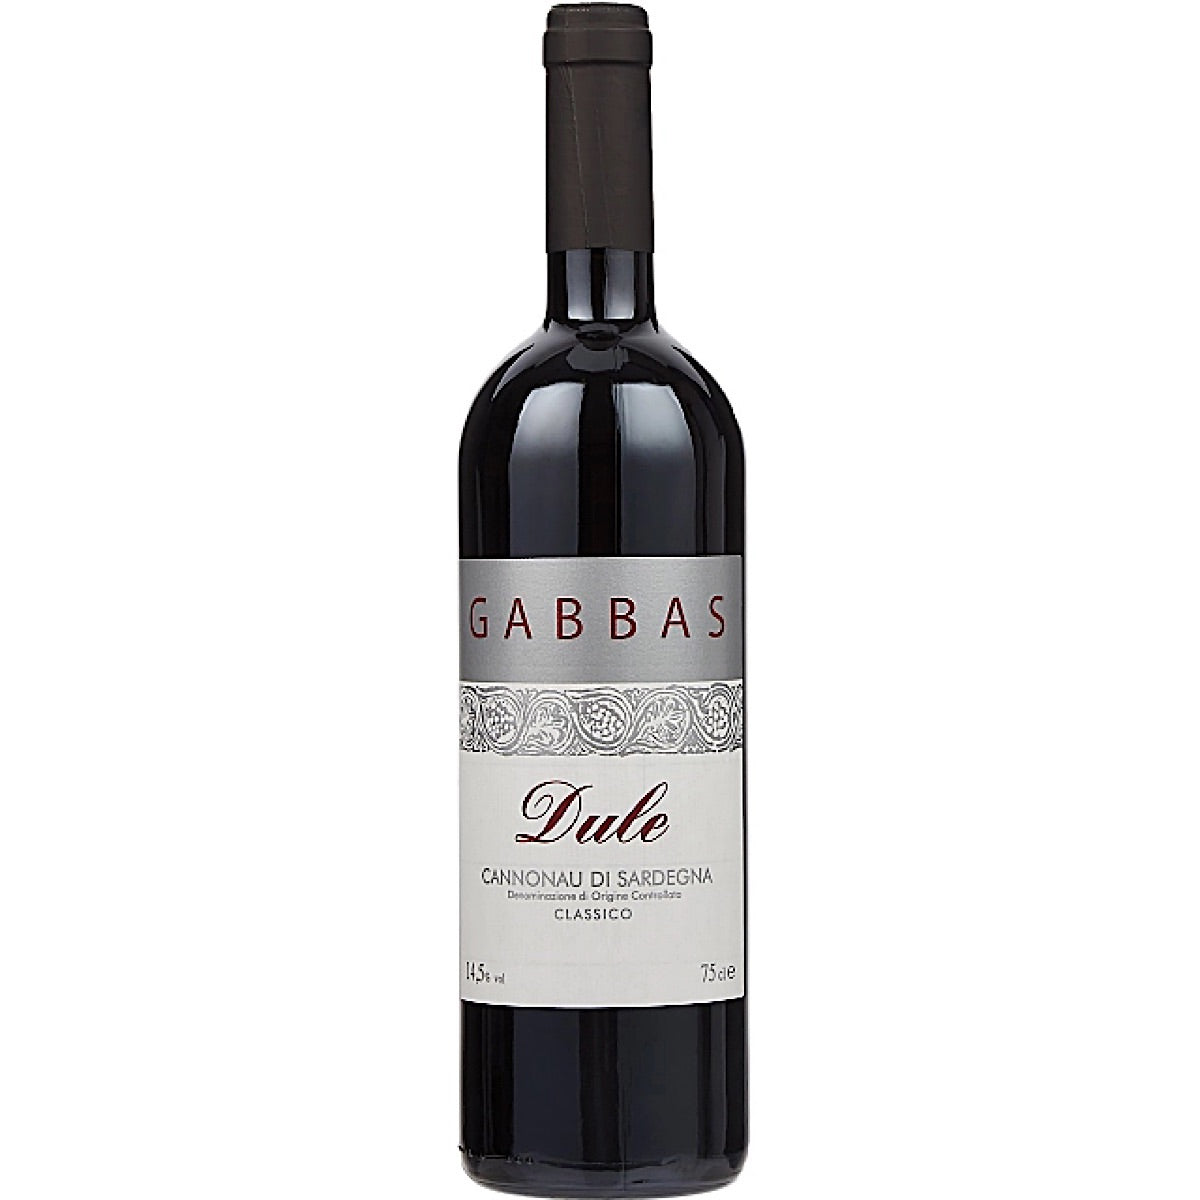 Gabbas, Cannonau di Sardegna Riserva Dule 6 Bottle Case 75cl